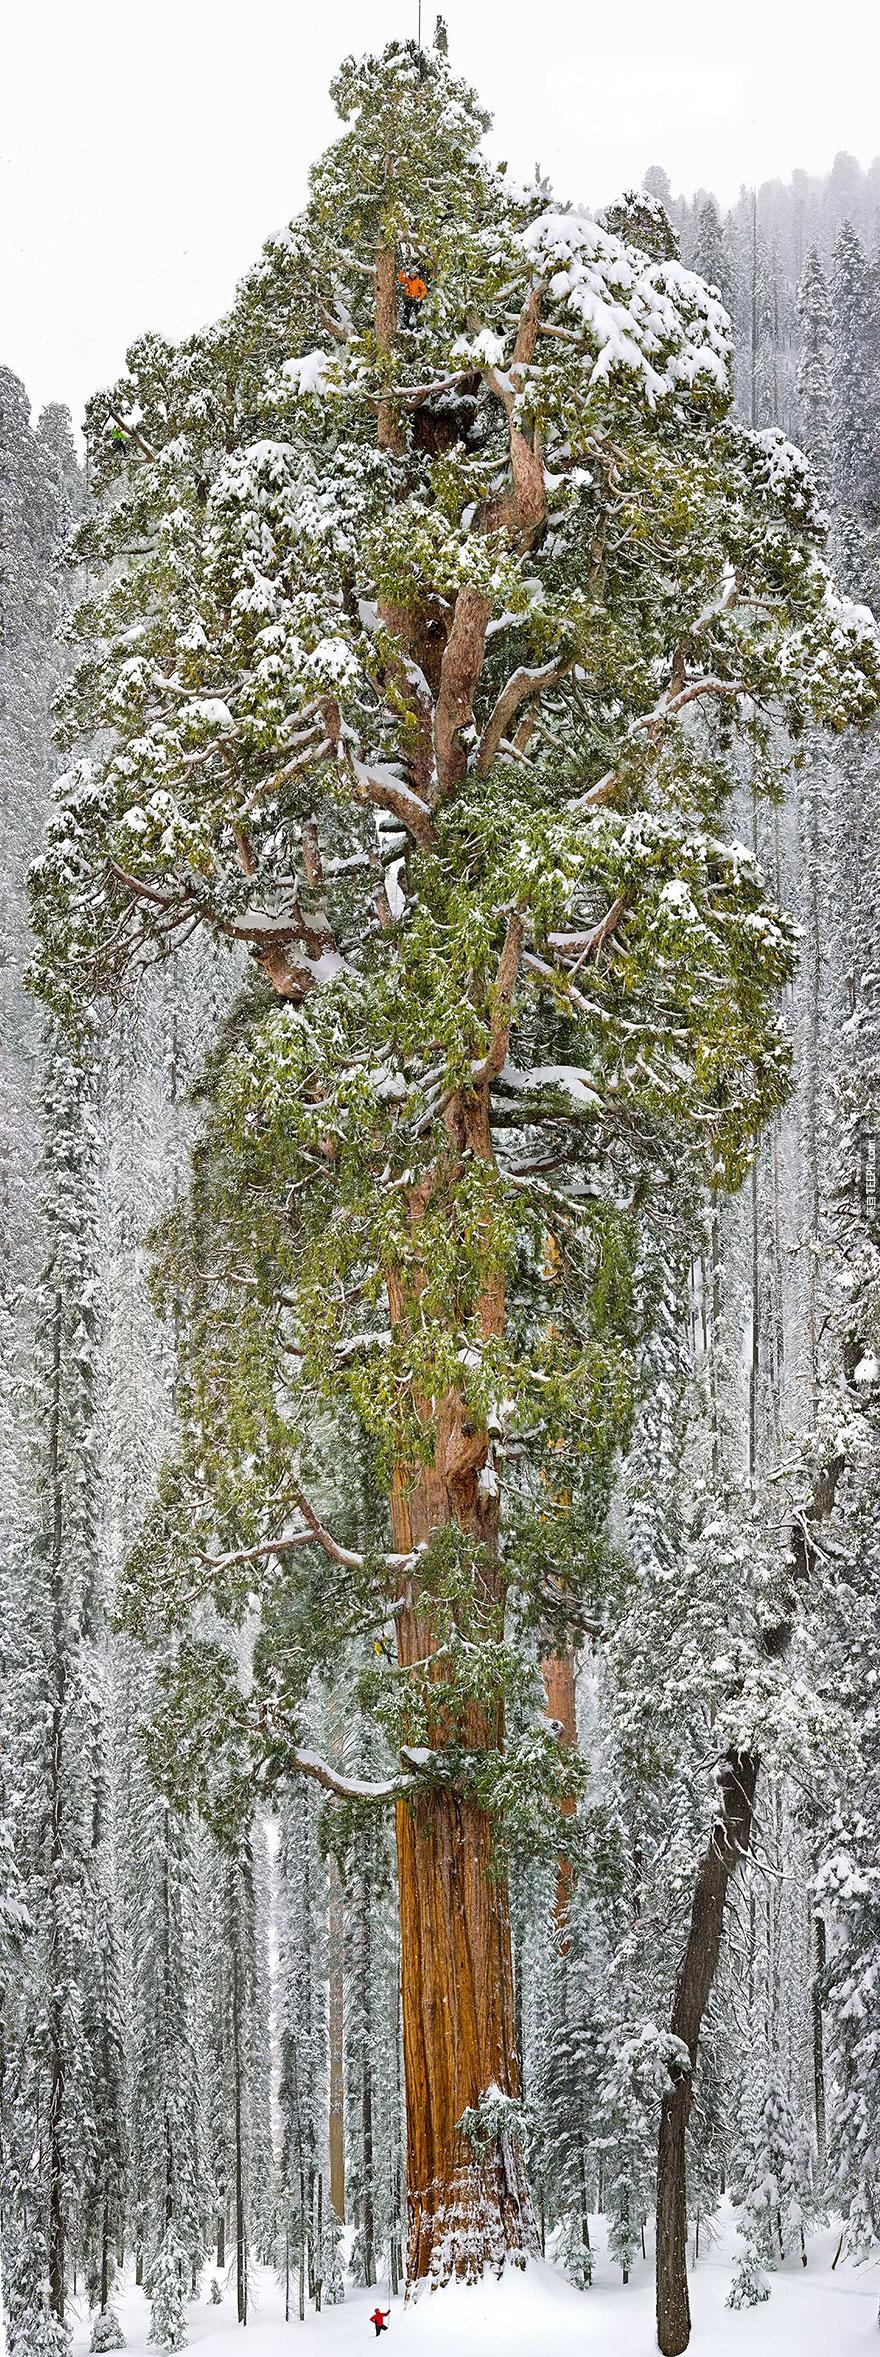 總統樹 － 全世界第三大的紅杉樹 (美國加州)